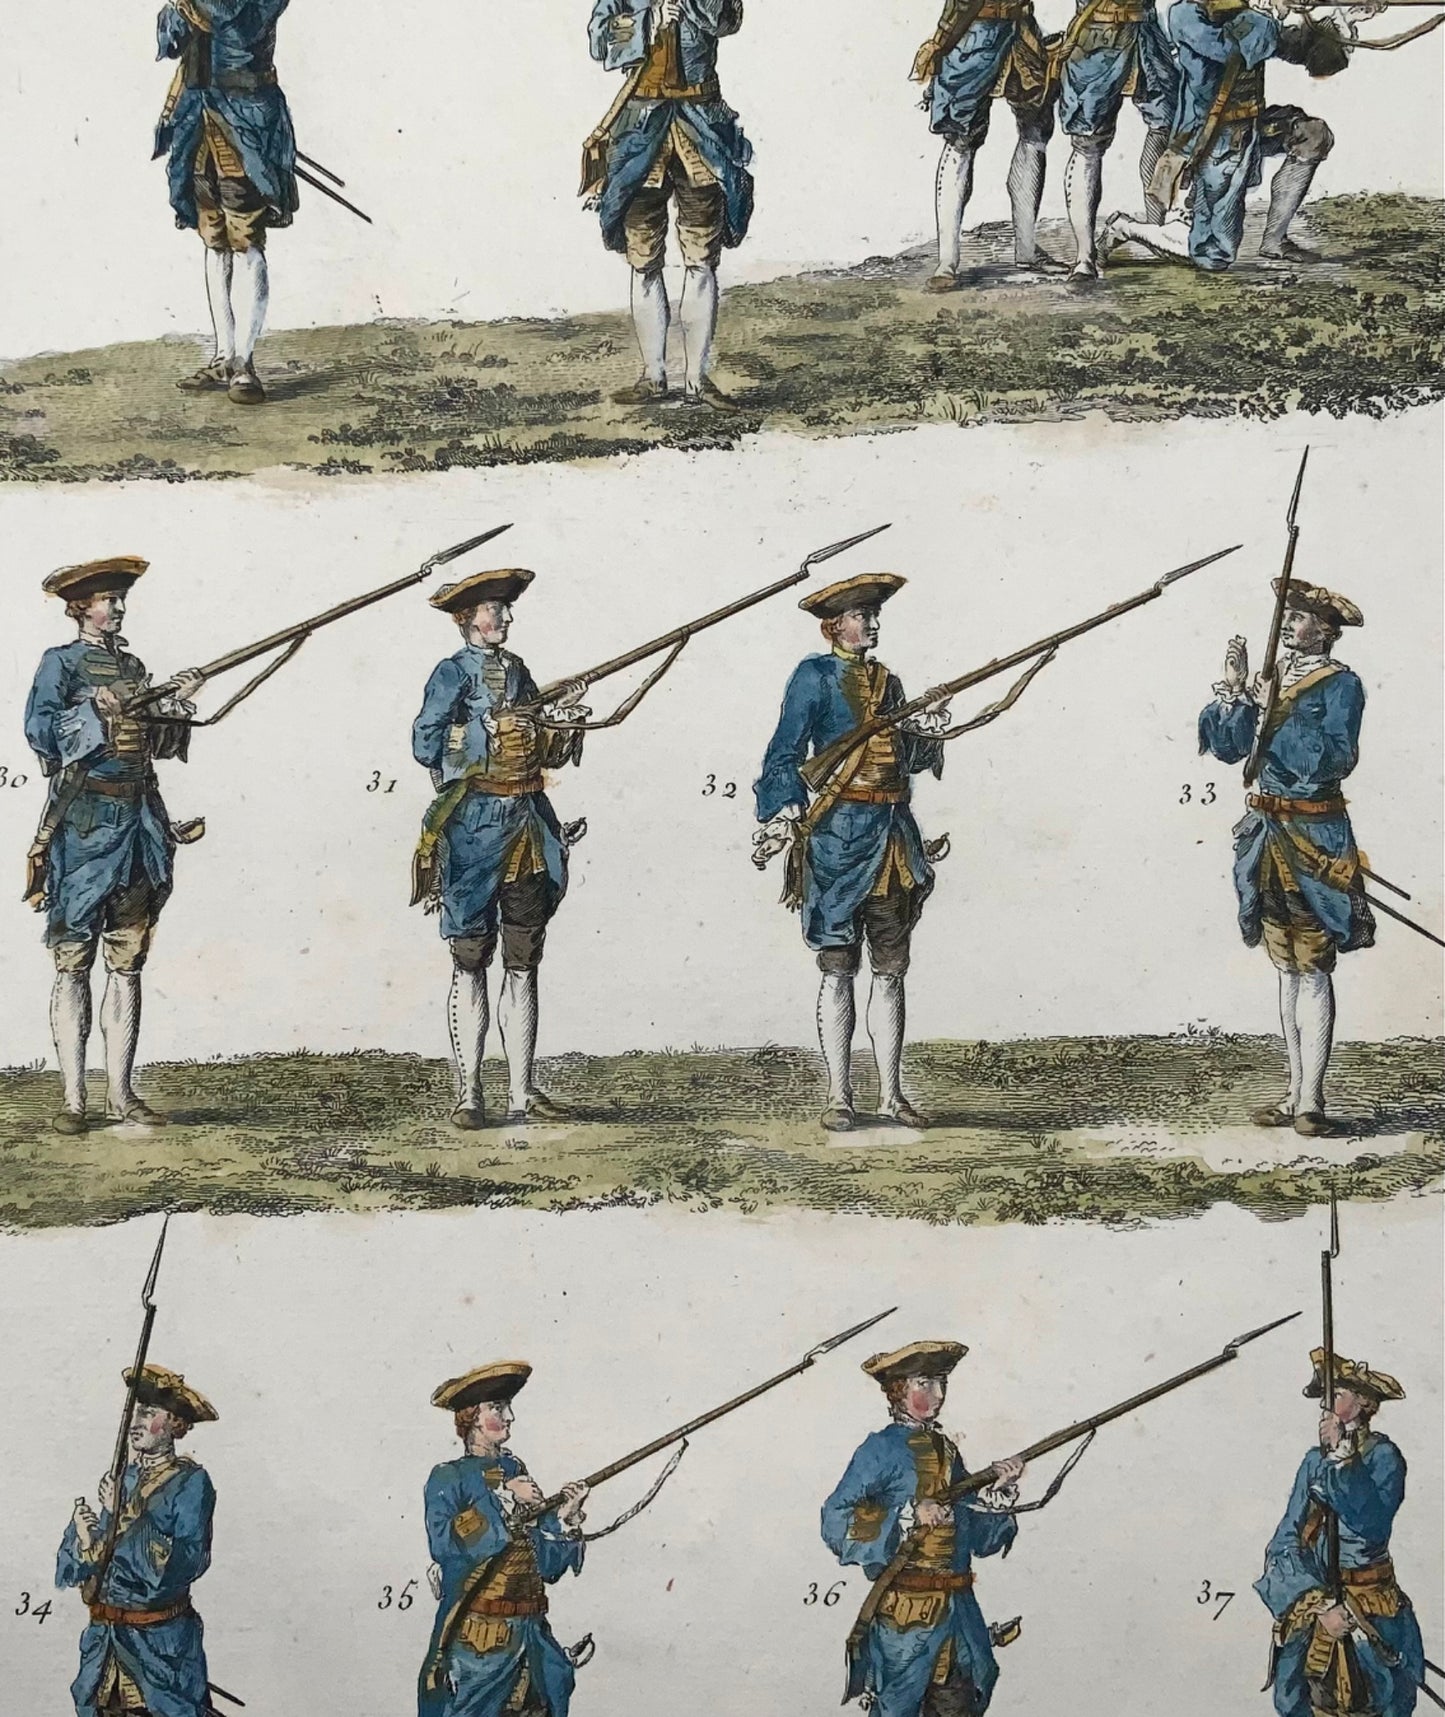 1777 Esercizi di fanteria, grande foglio, colorato a mano, Diderot, militare